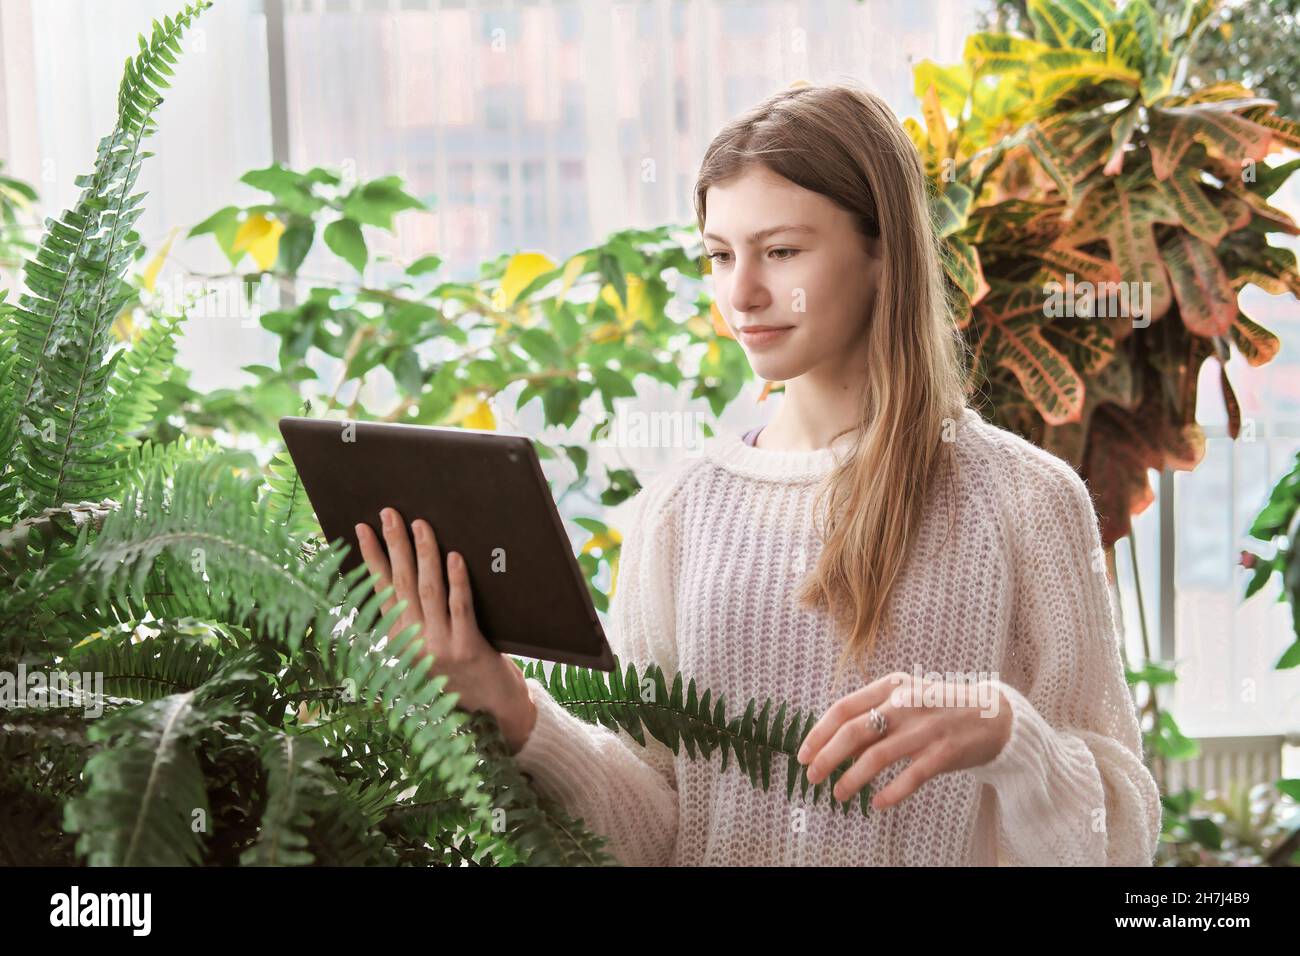 adolescente fille debout entre de grandes plantes vertes et regardant la tablette pc. maison jungle concept. jeune fille à la recherche de bouts de jardinage Banque D'Images